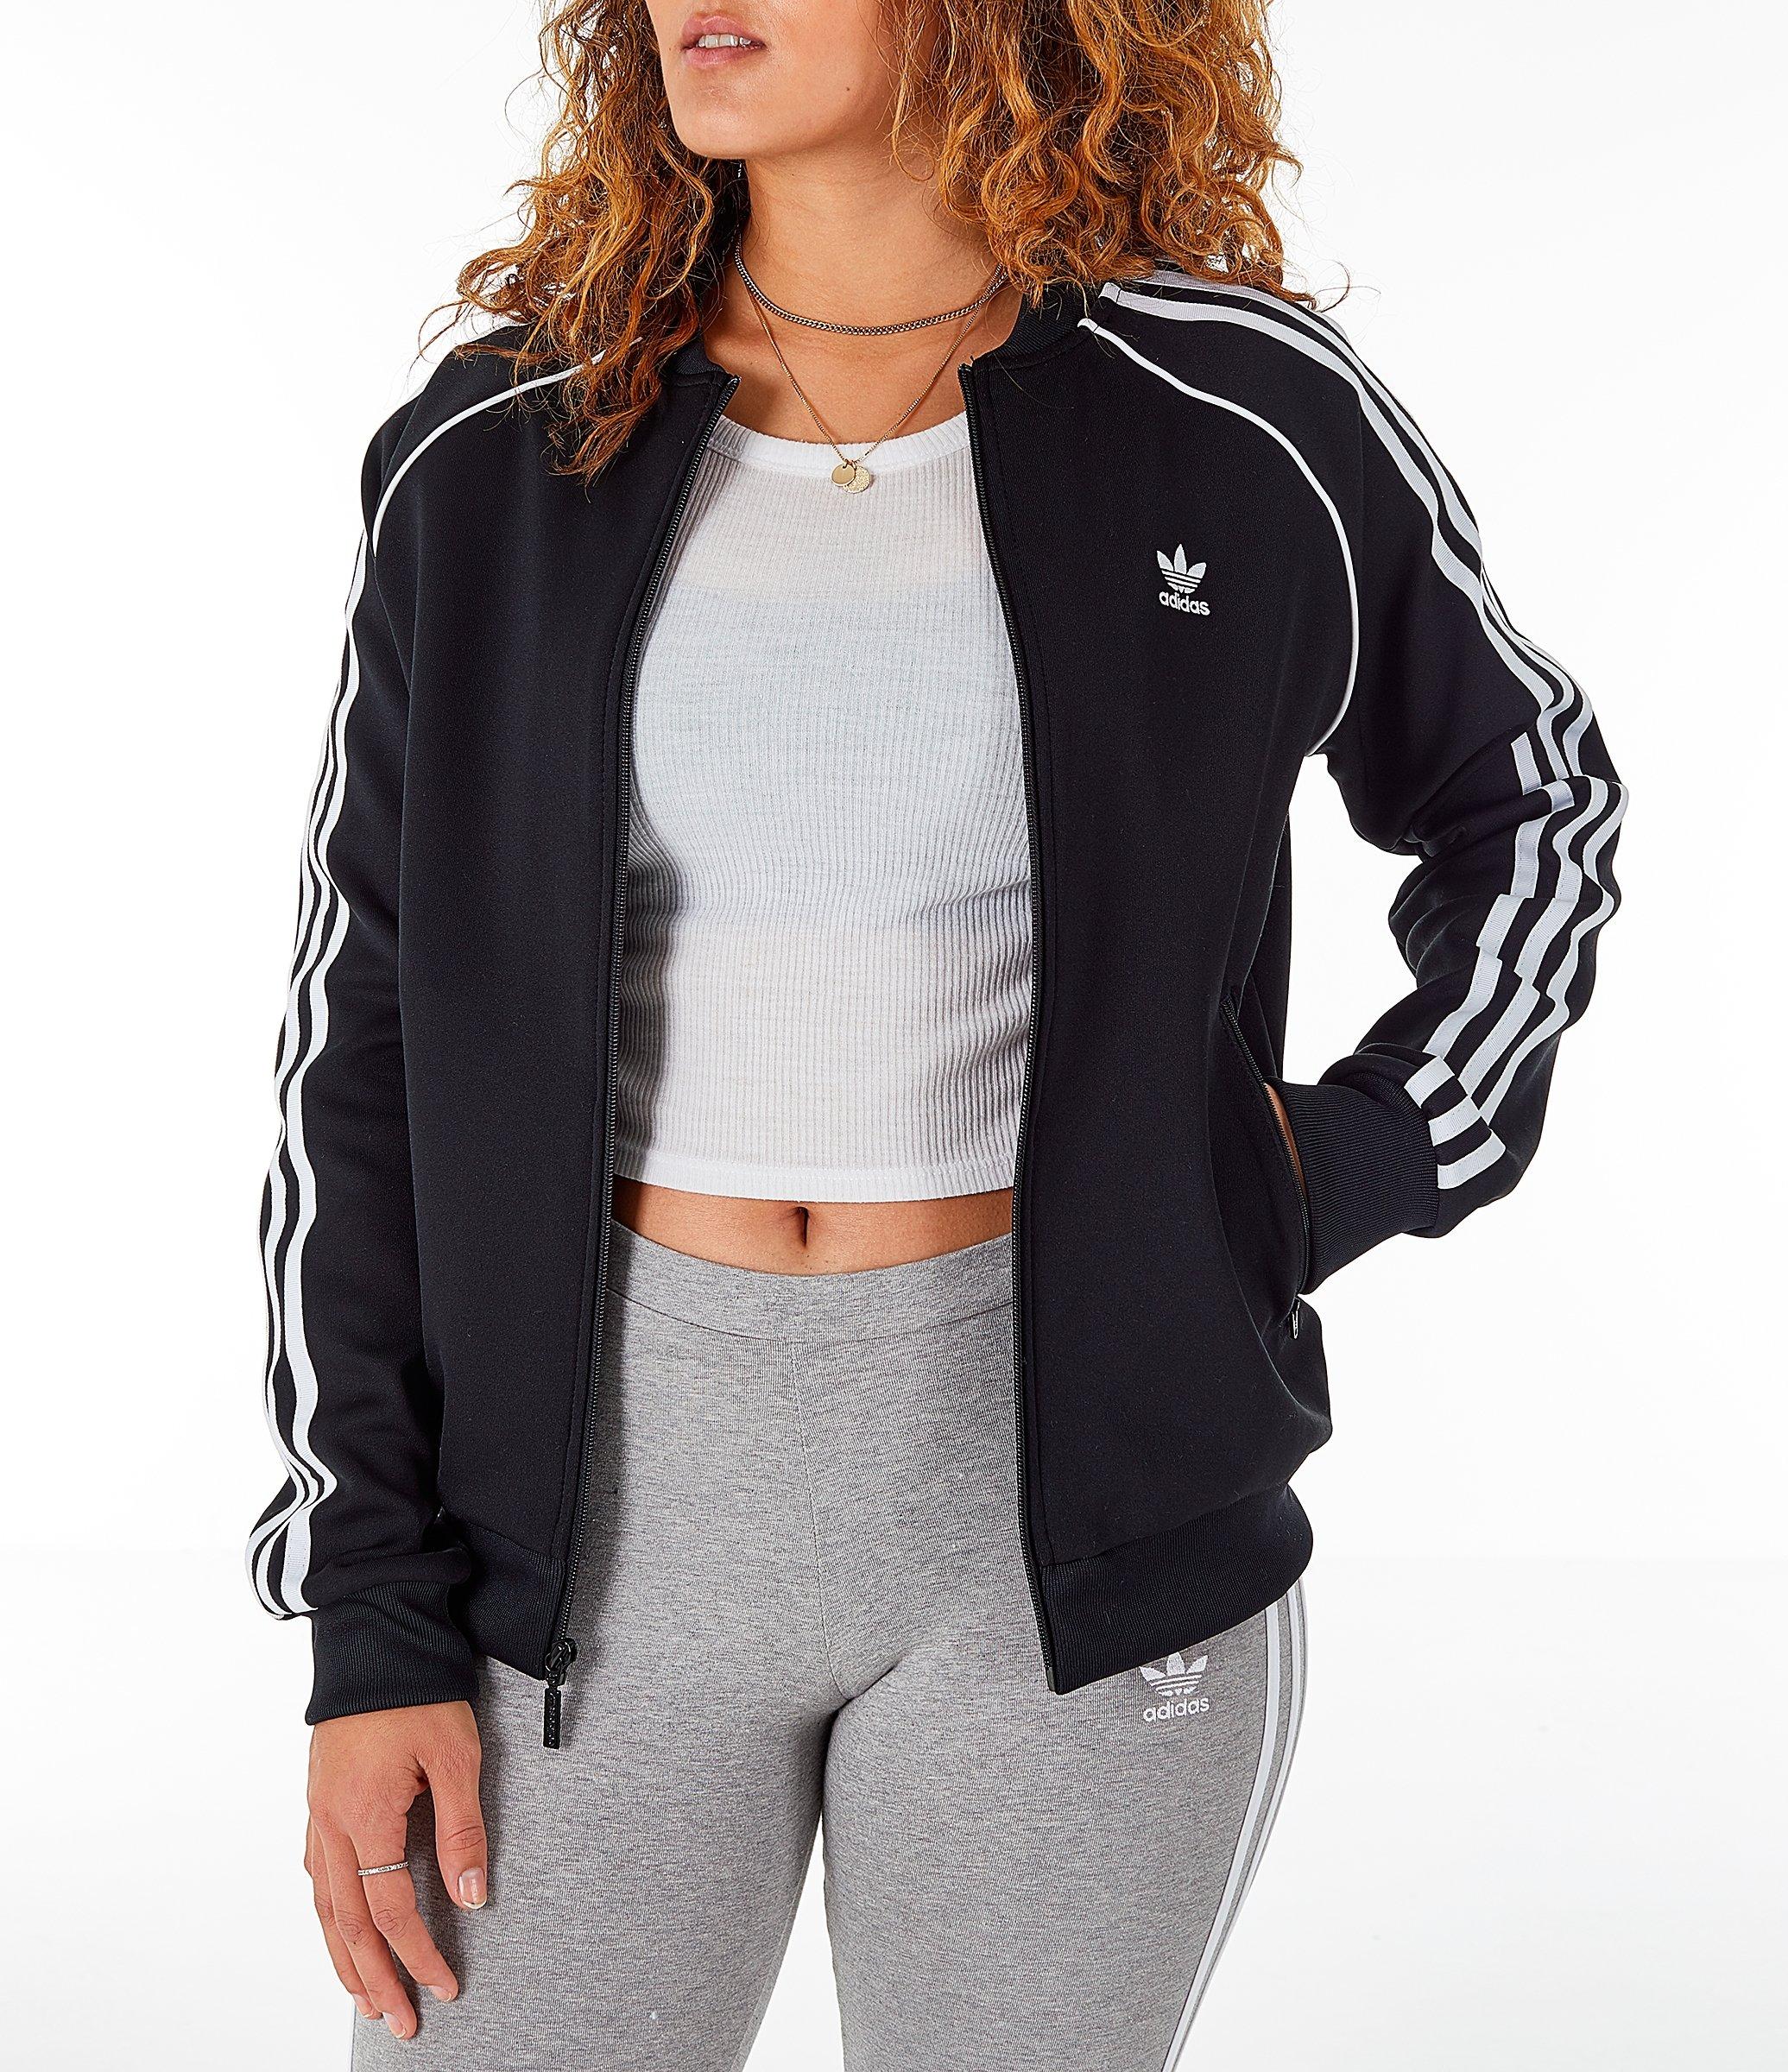 adidas girl track jacket